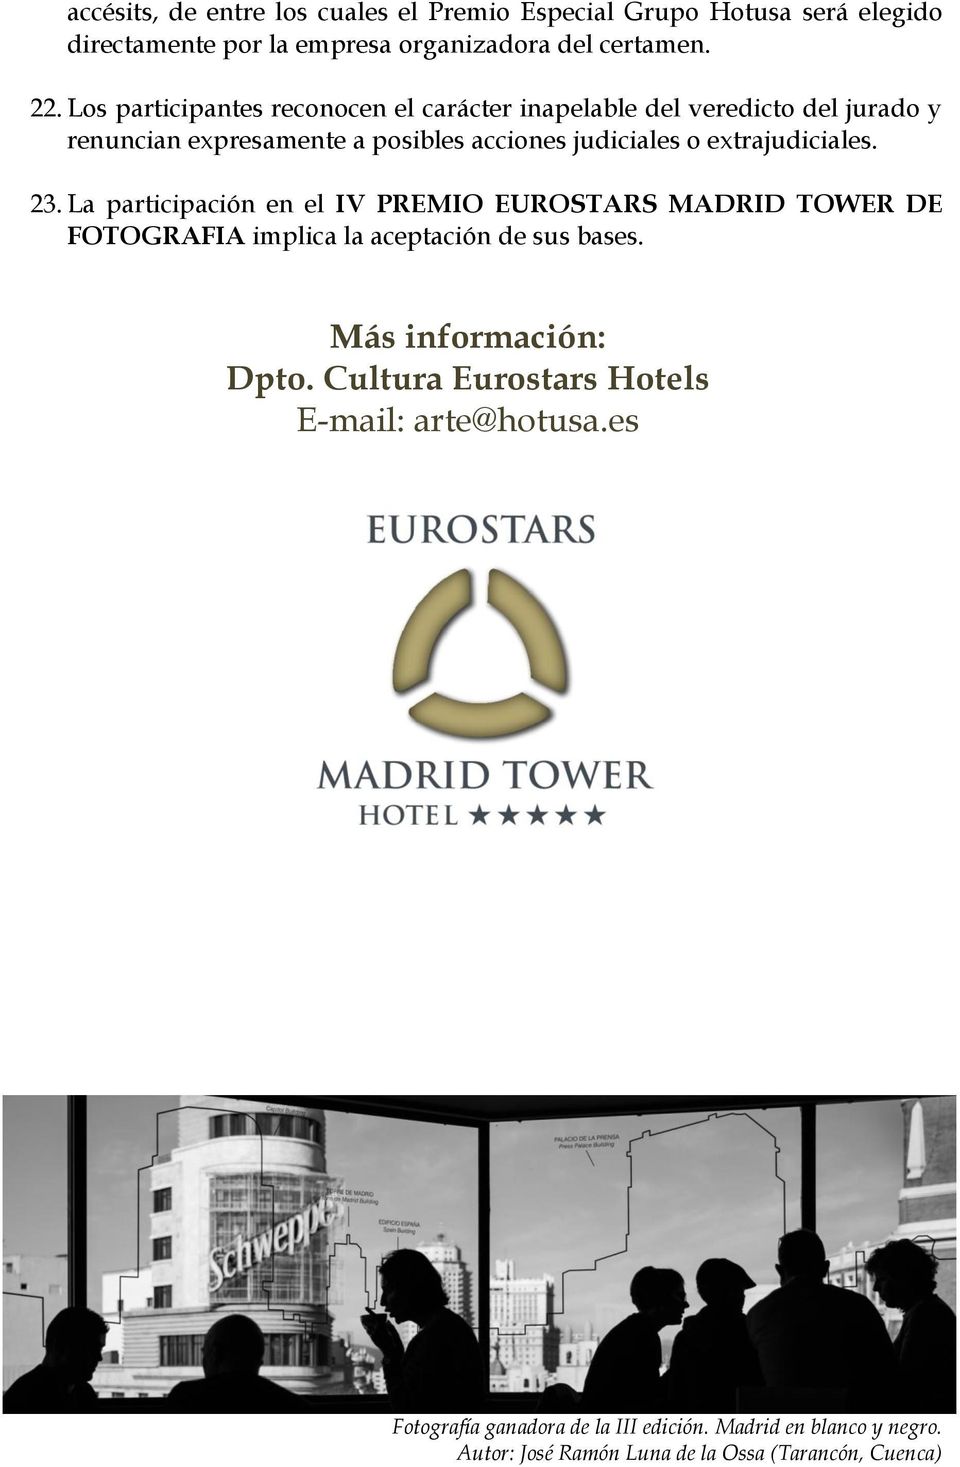 extrajudiciales. 23. La participación en el IV PREMIO EUROSTARS MADRID TOWER DE FOTOGRAFIA implica la aceptación de sus bases.